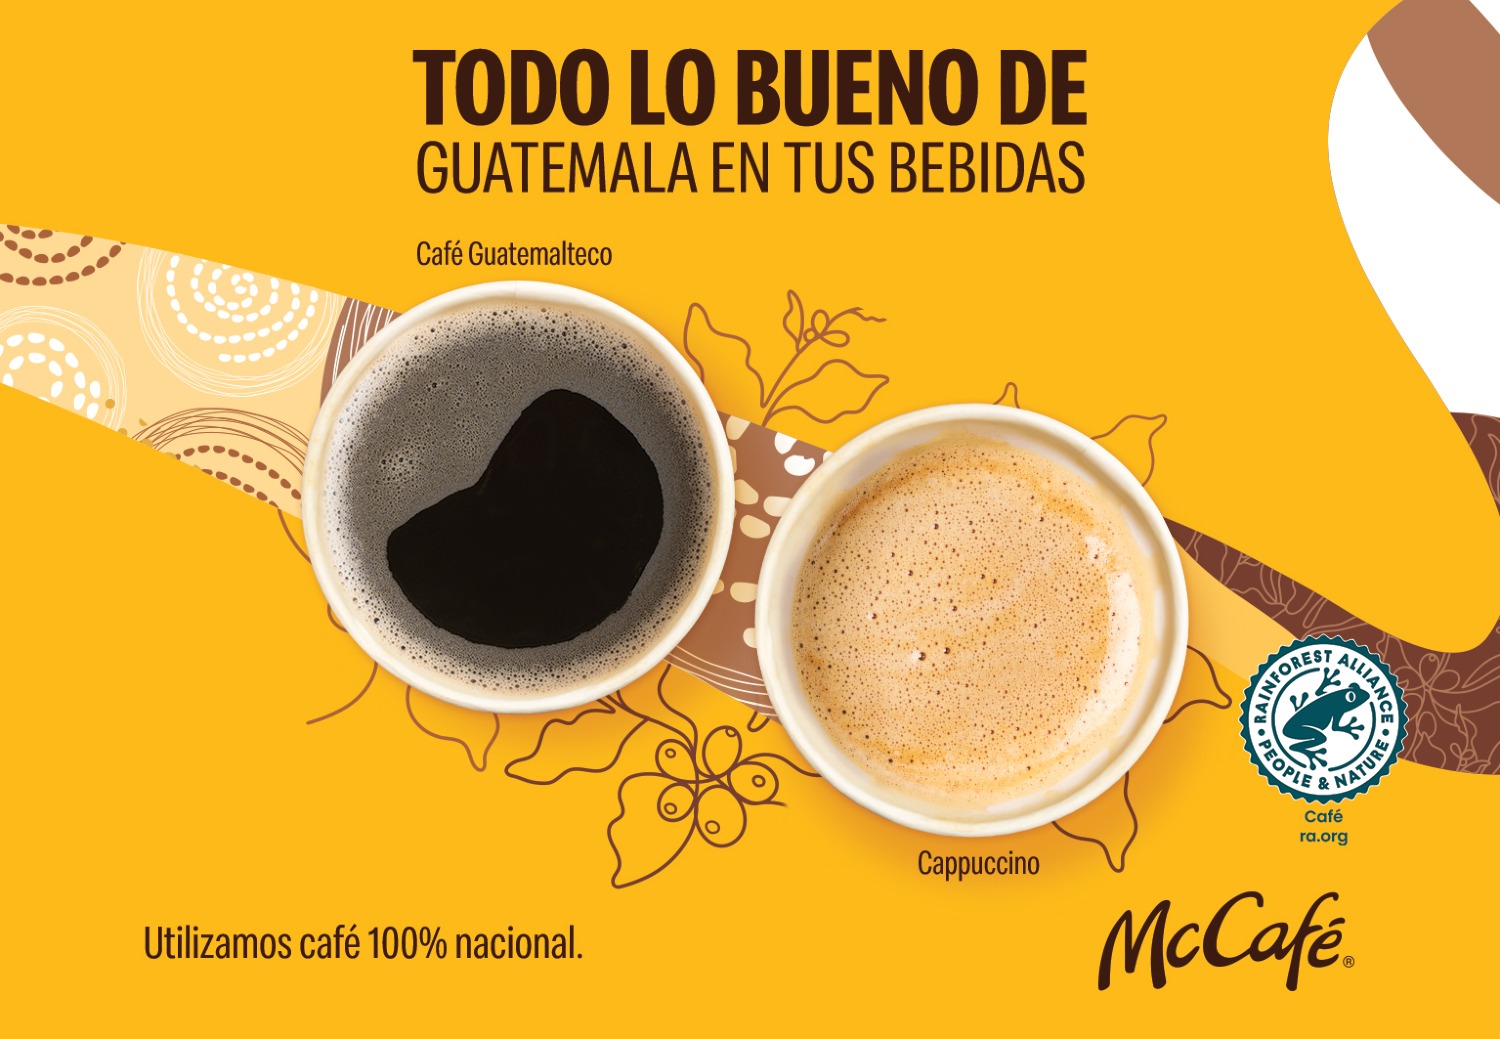 Todo lo bueno de Guatemala  en tus bebidas de McDonald’s y McCafé